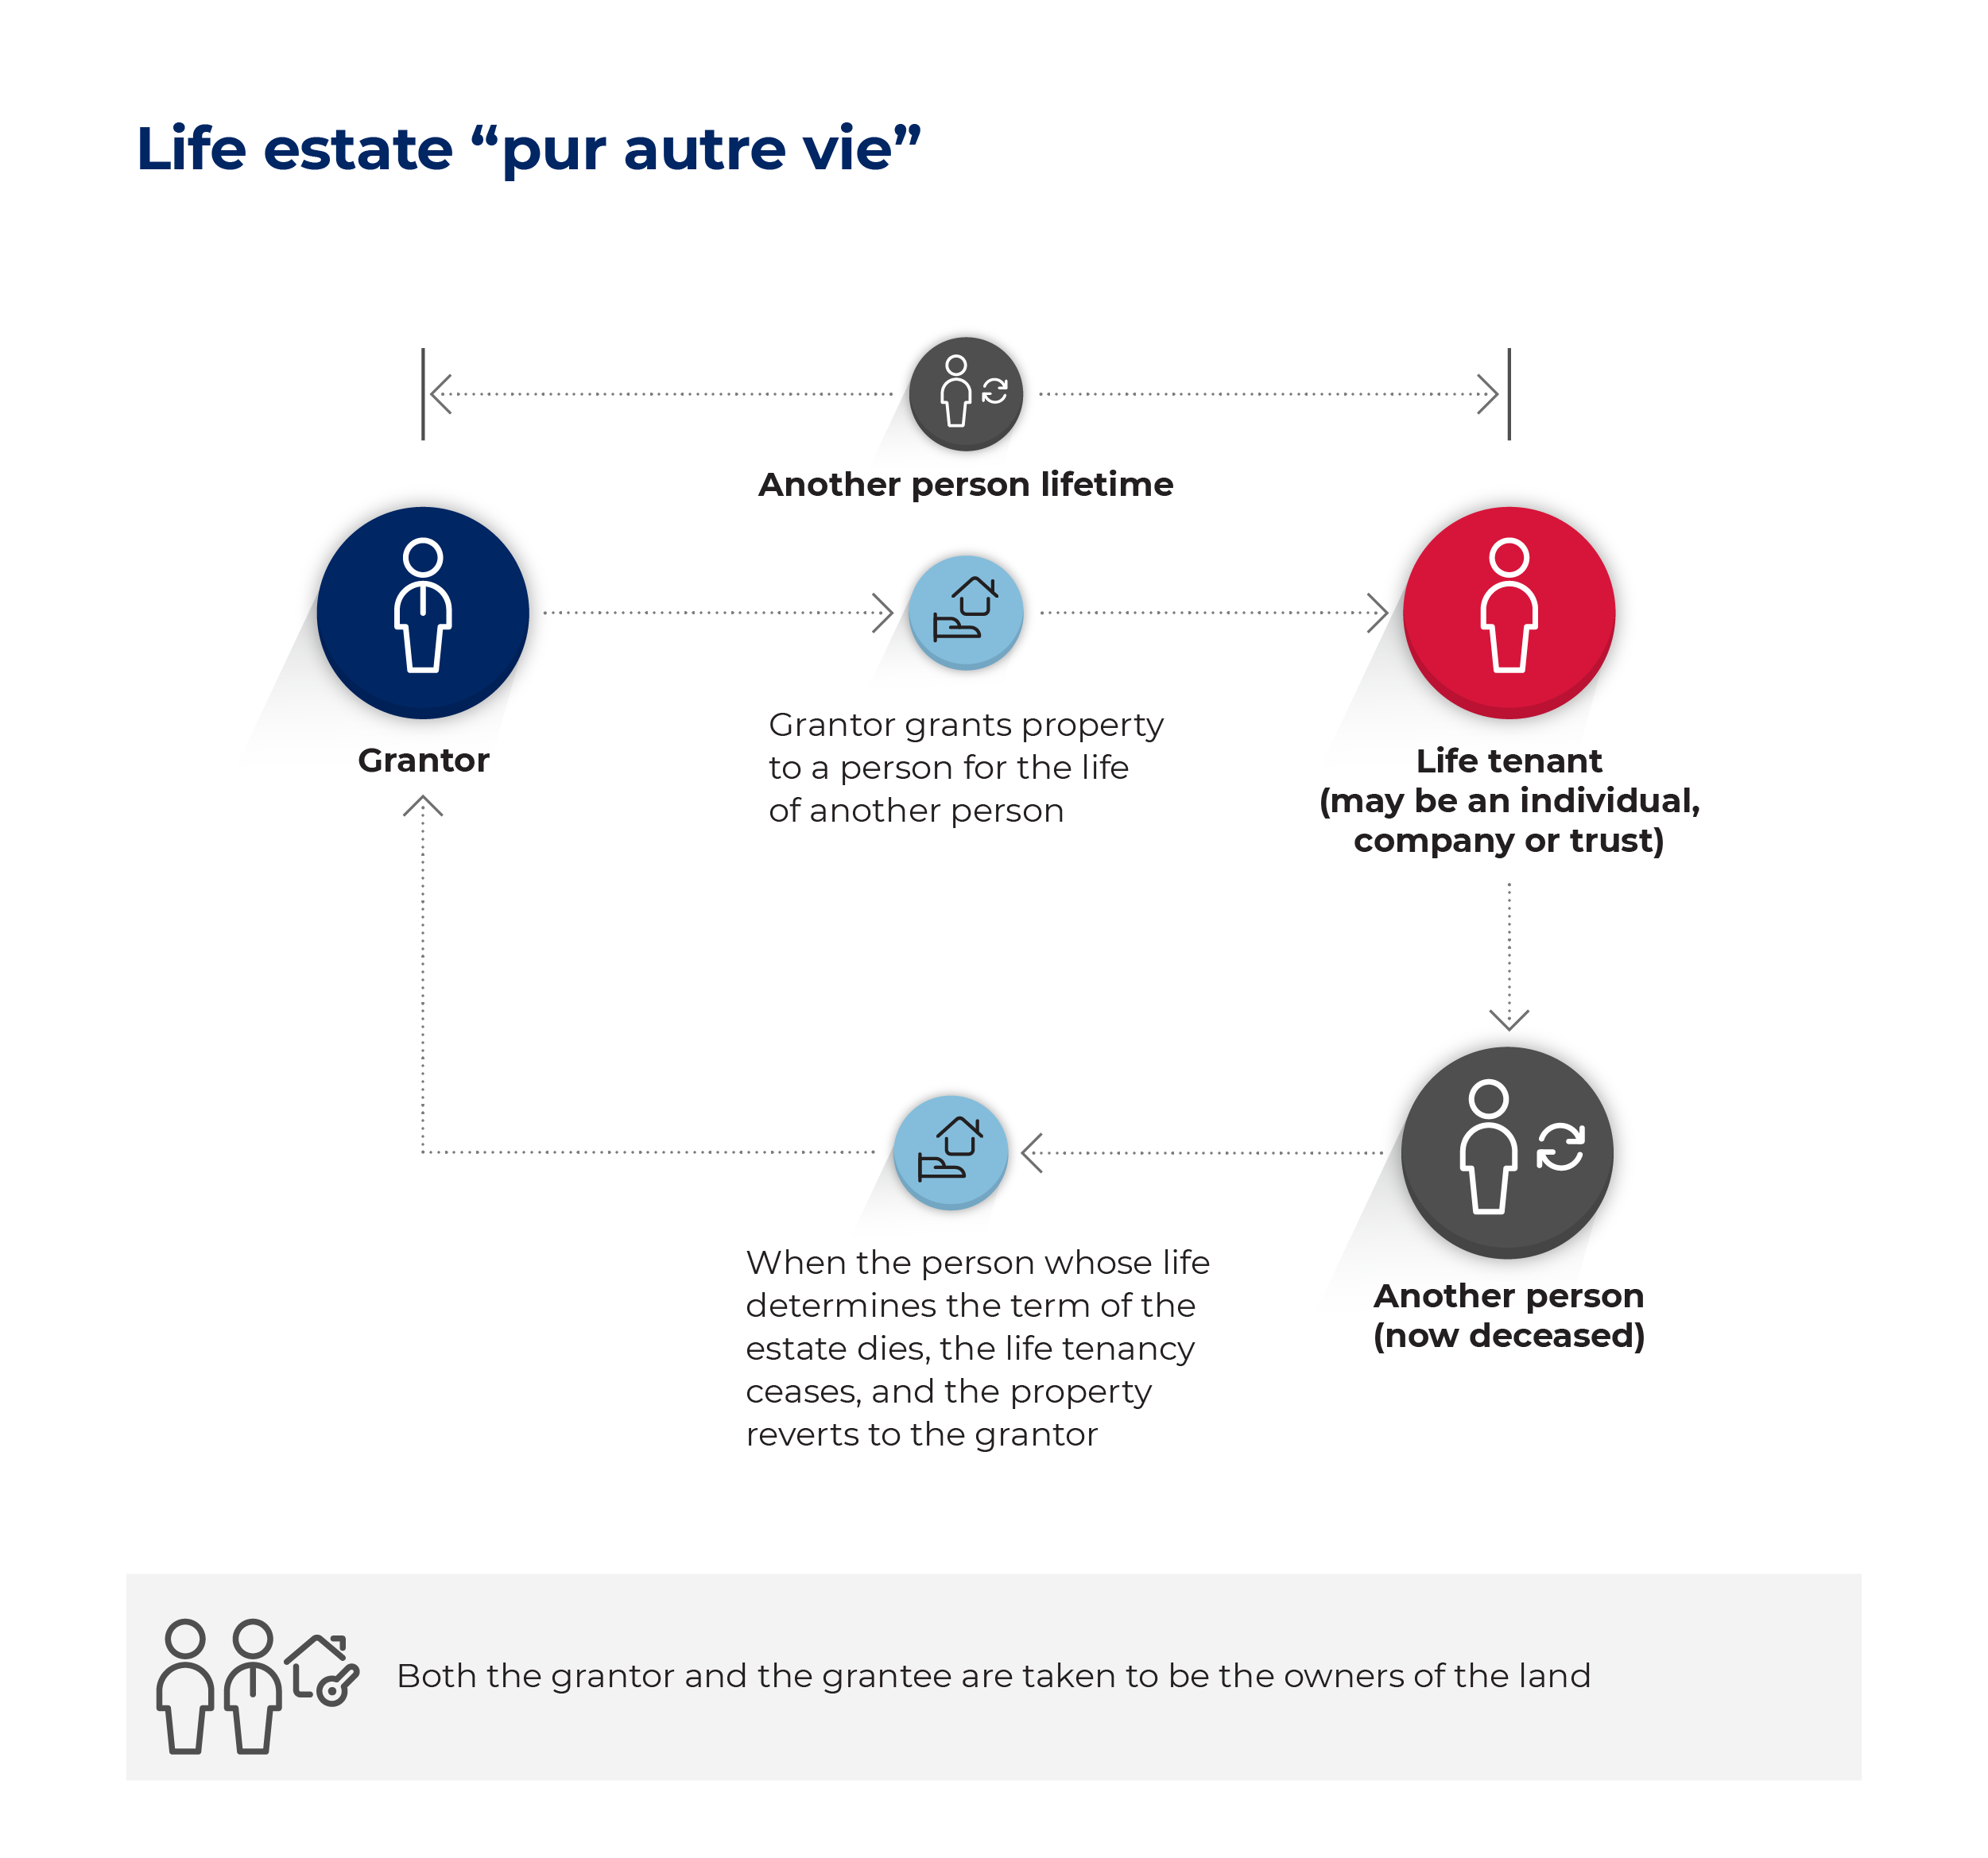 Flowchart showing life estate "pur autre vie"